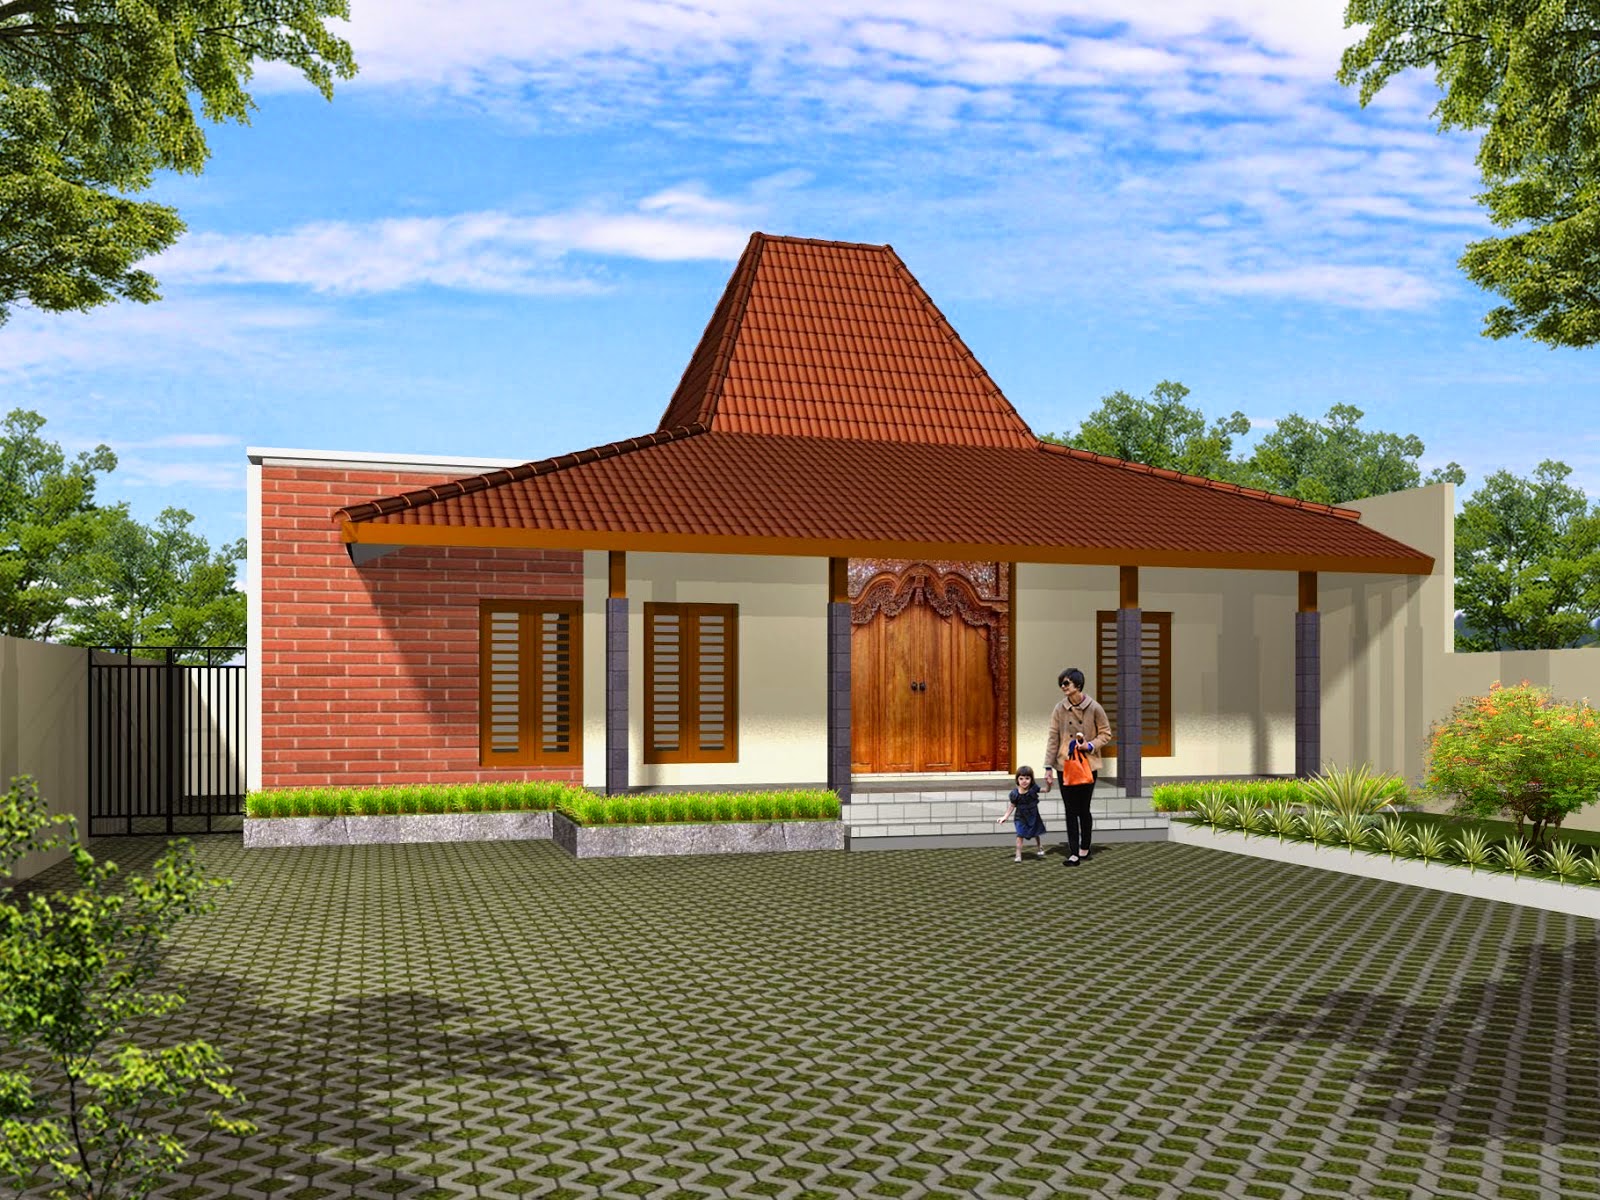 45 Desain Rumah Joglo Khas Jawa Tengah Desainrumahnyacom